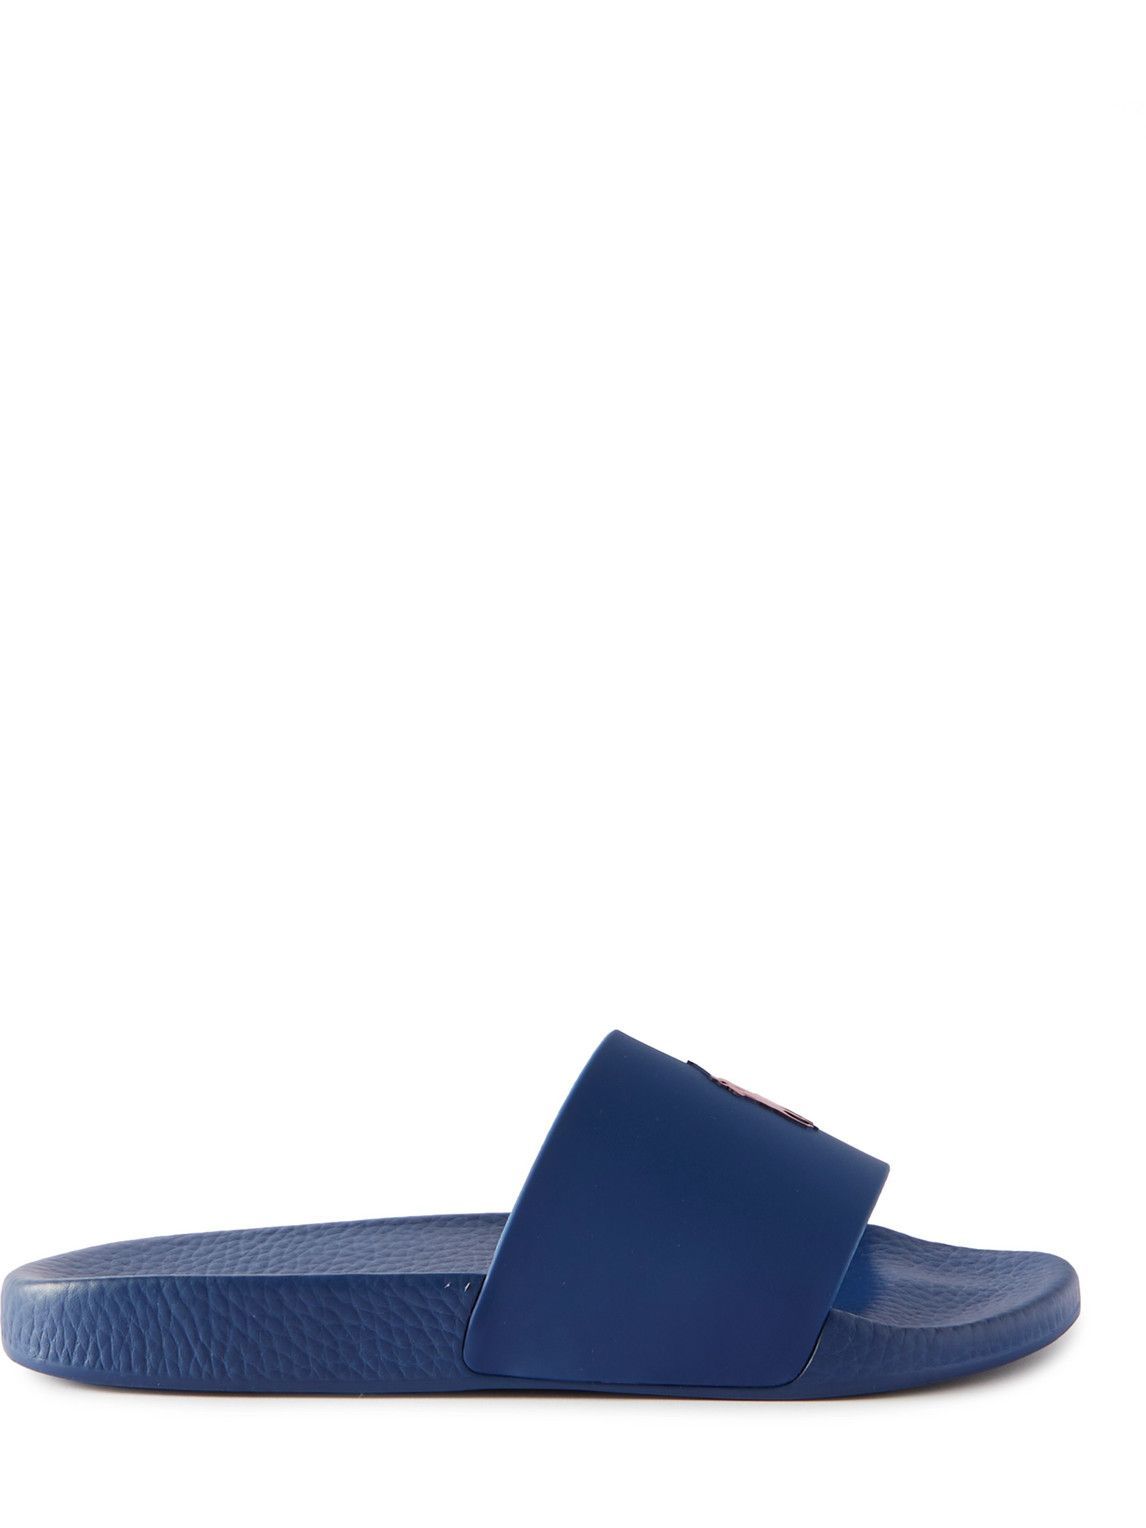 Photo: Polo Ralph Lauren - Logo-Debossed Rubber Slides - Blue